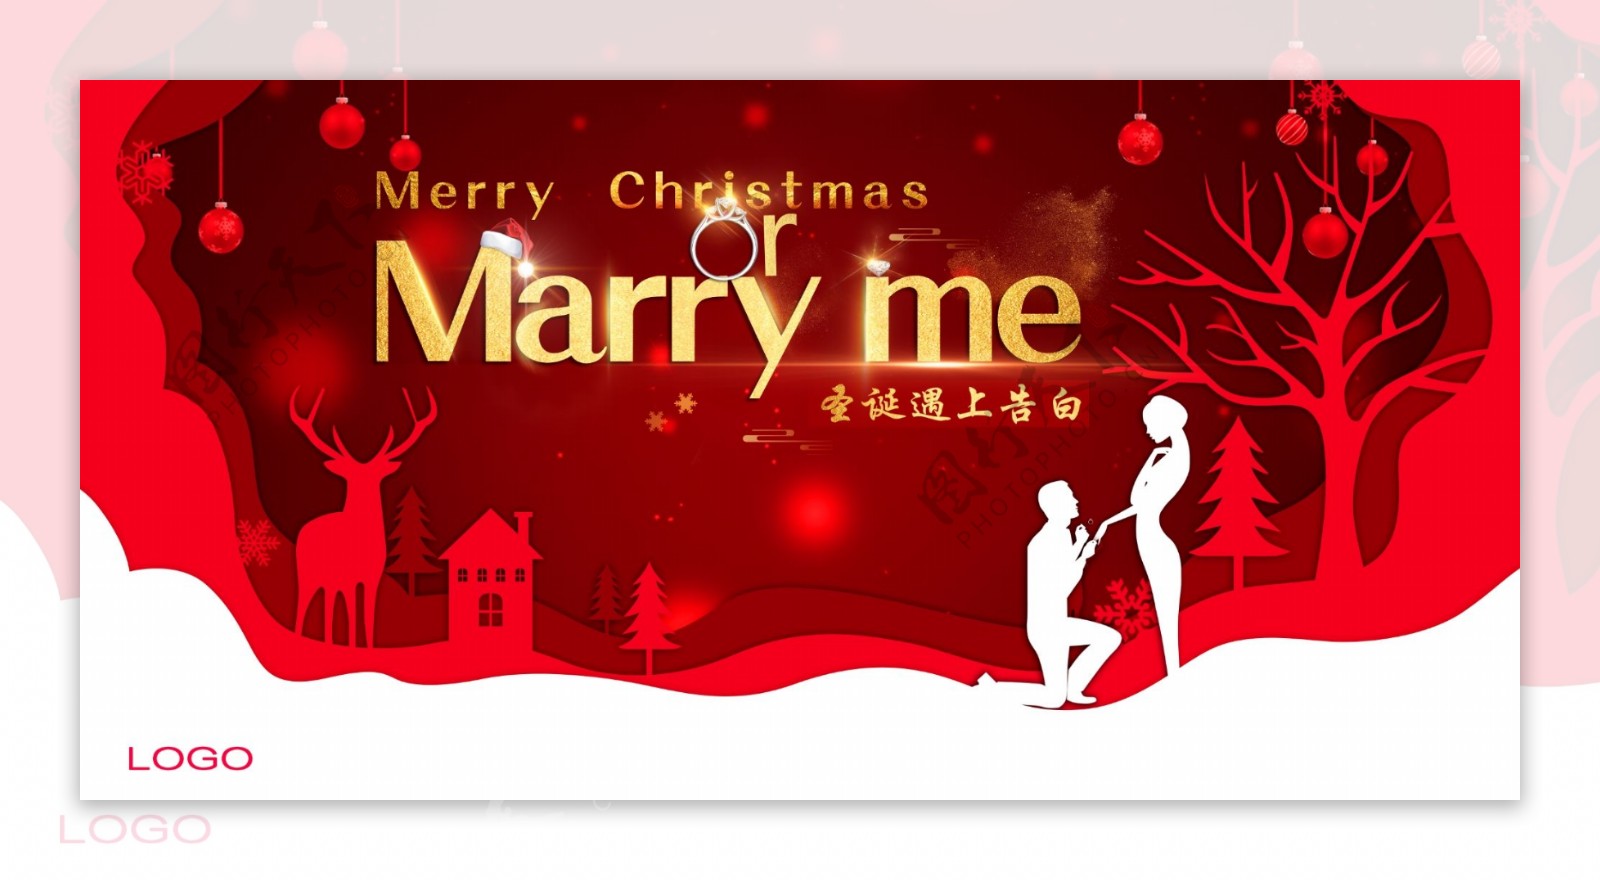 2018圣诞节红色圣诞树恋人求婚商品宣传